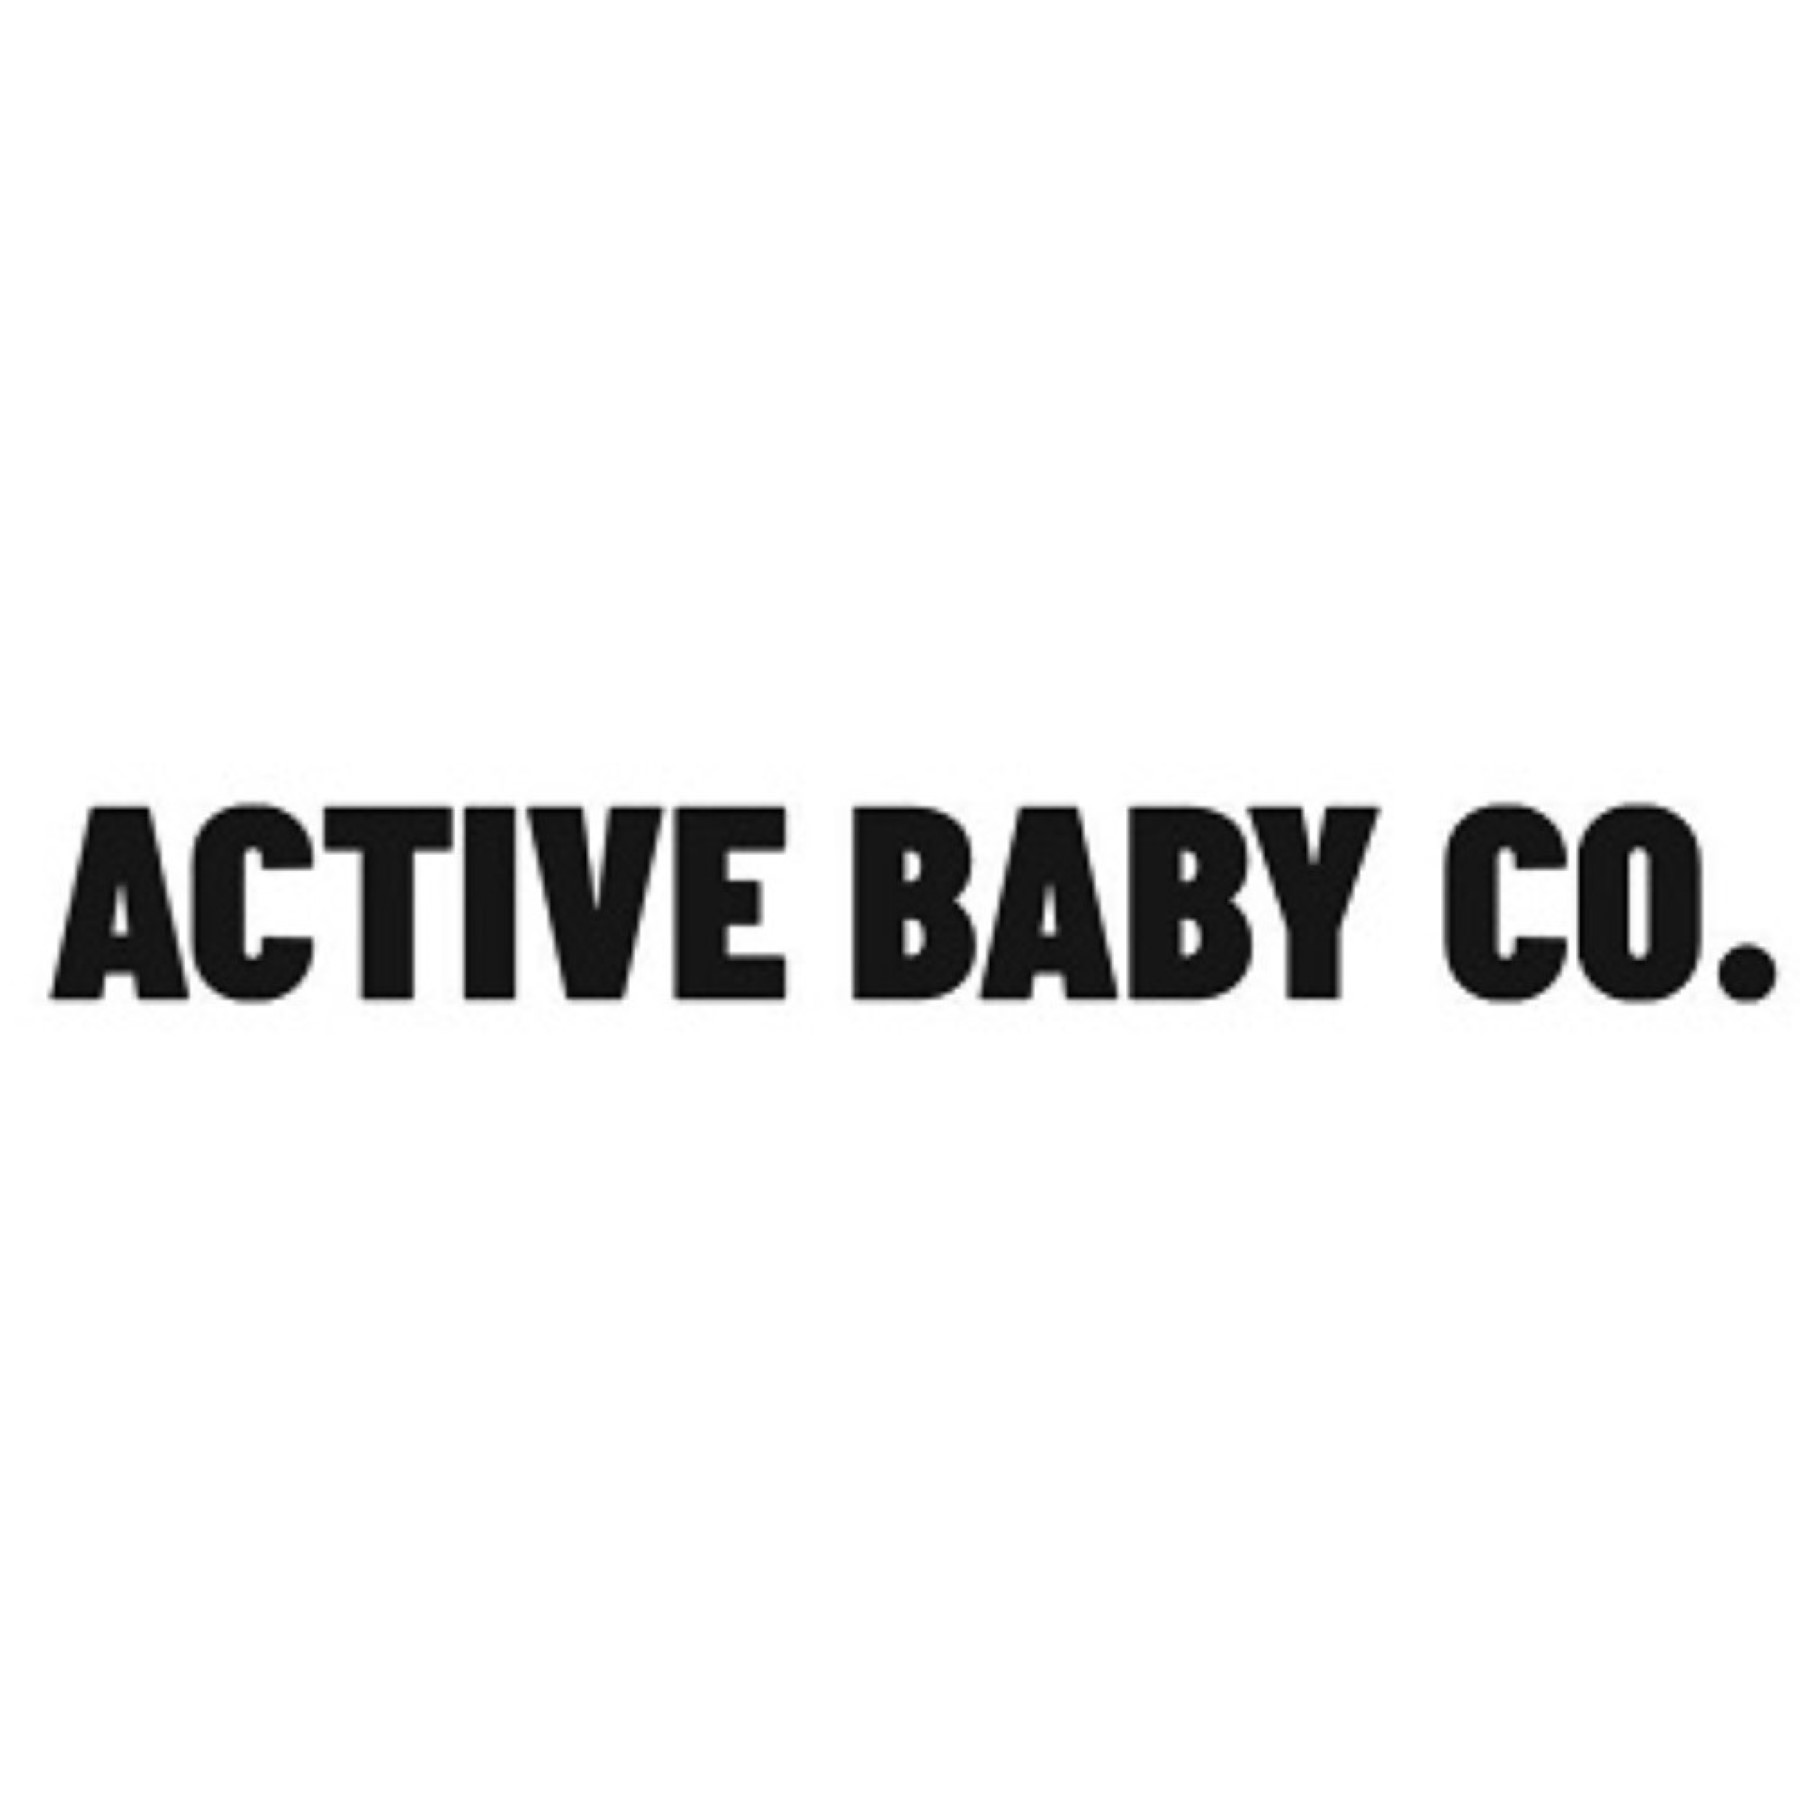 Active Baby Co Logo.jpg 